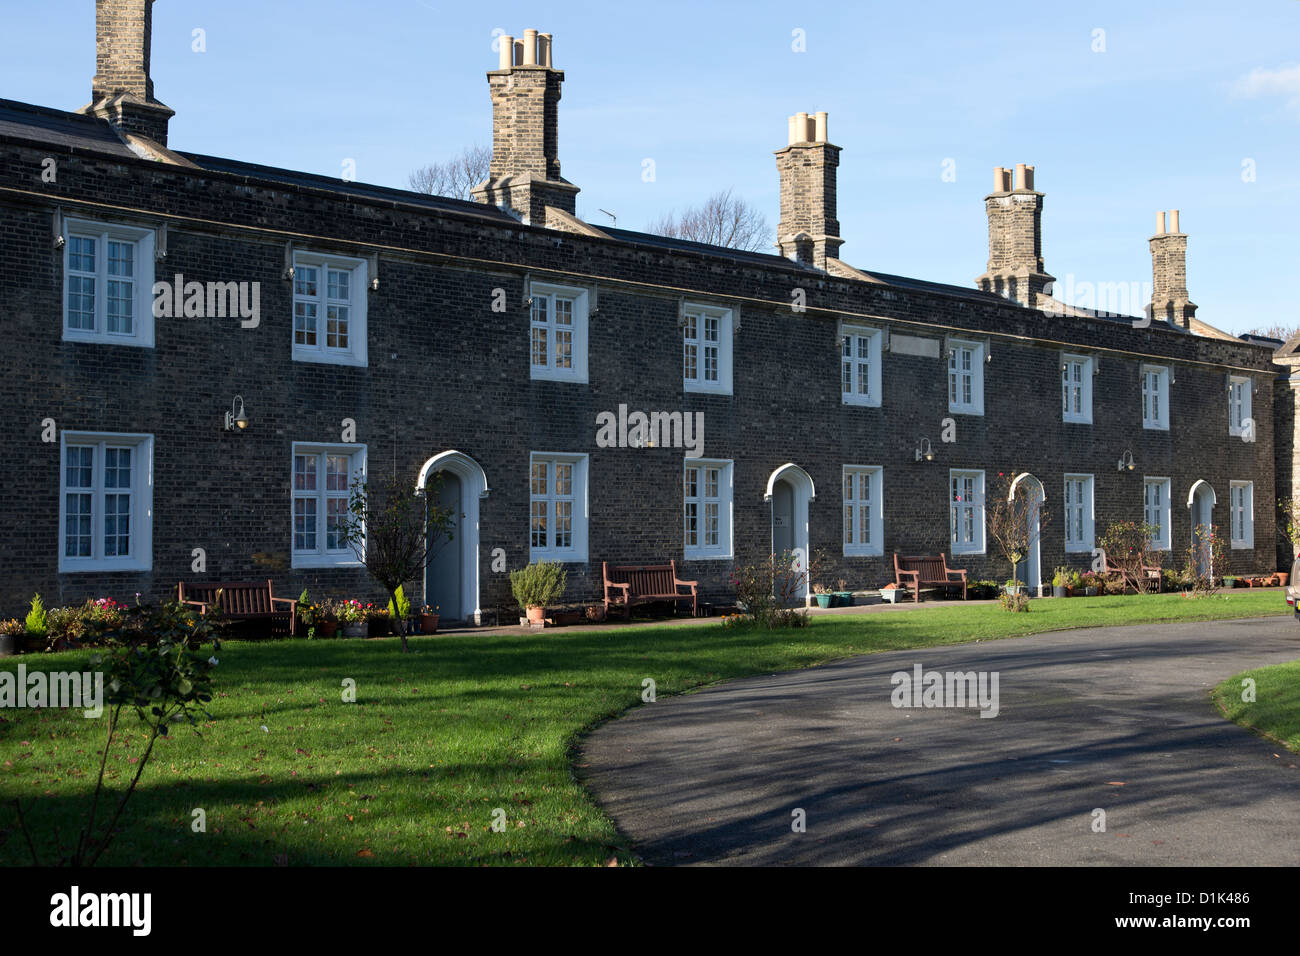 Avantage métropolitaine Cottages hospices, de retraite ou de foyers-logements. Balls Pond Road, Dalston, Londres Banque D'Images